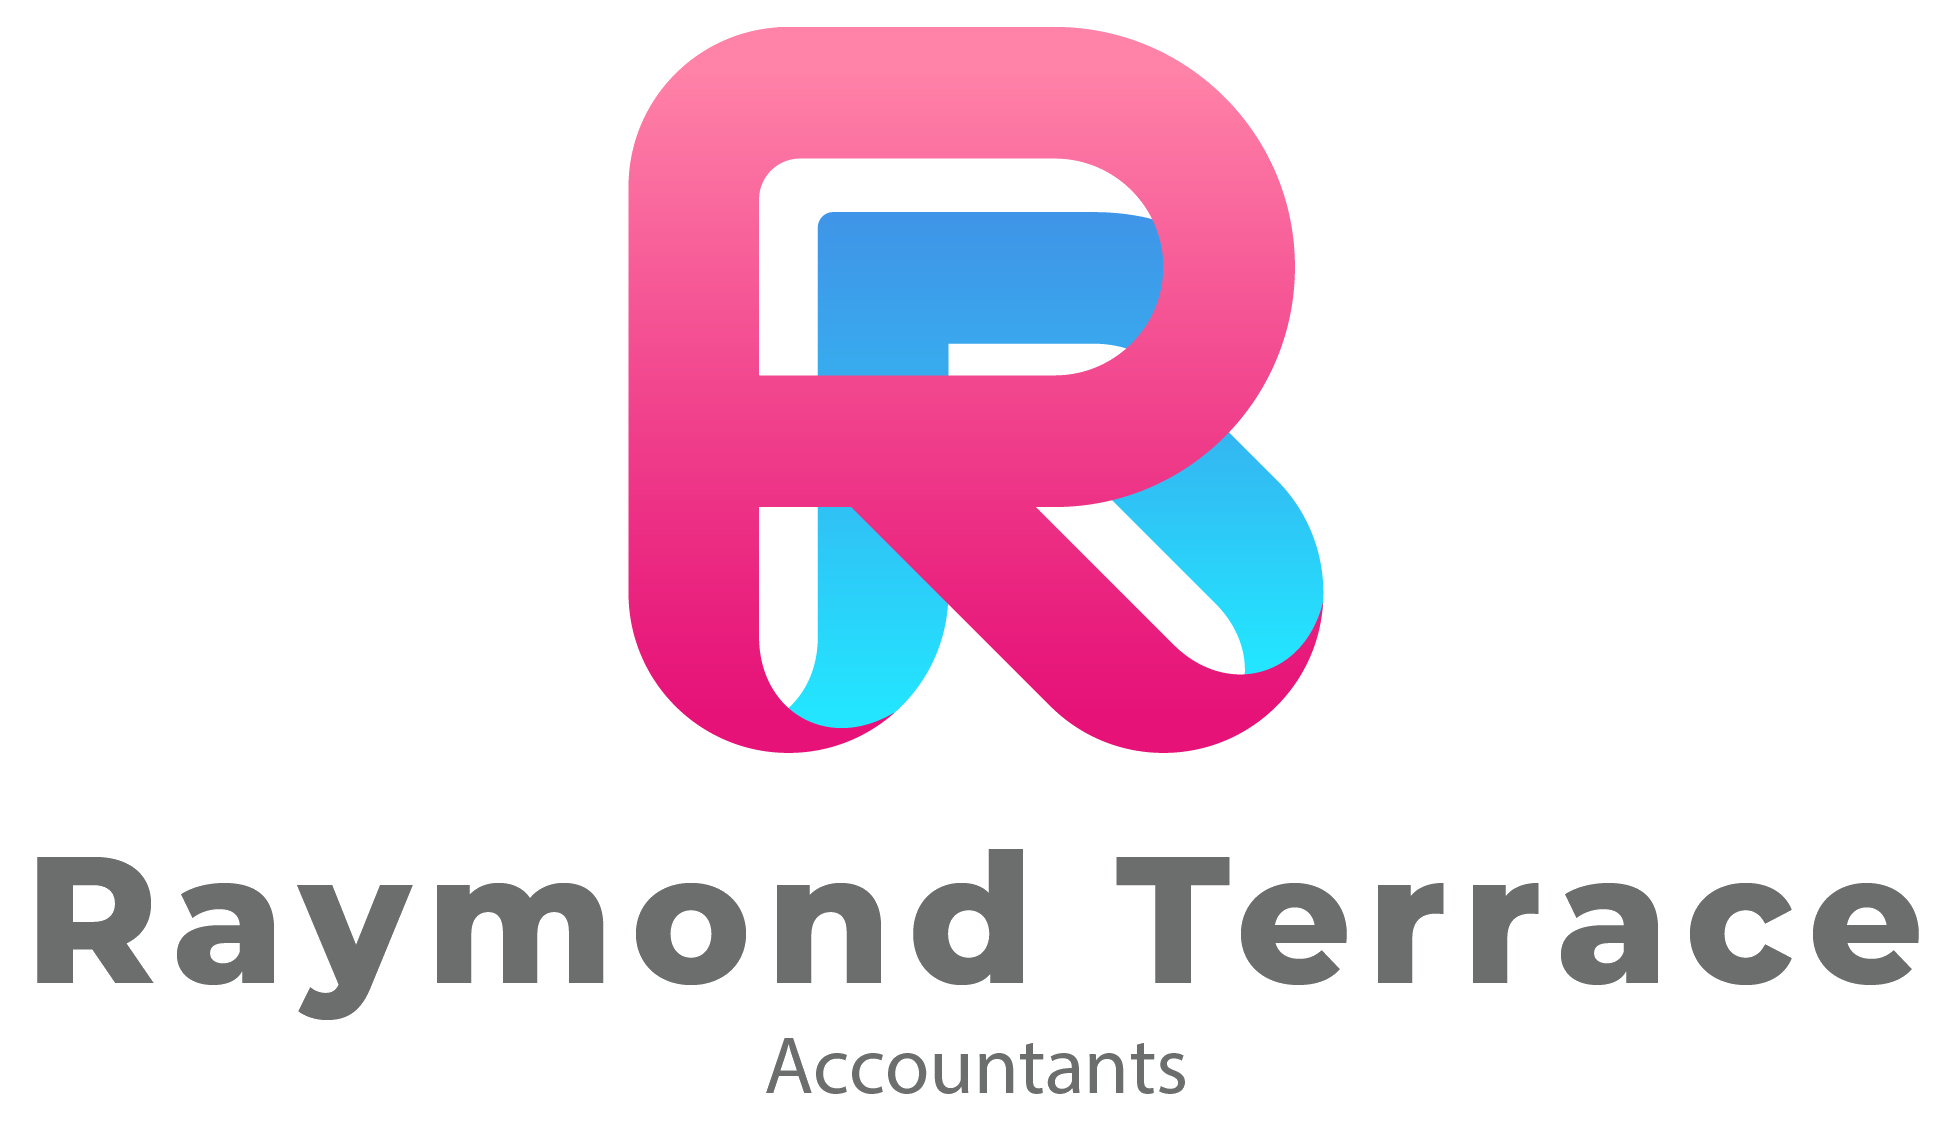 Raymond Terrace Accountants